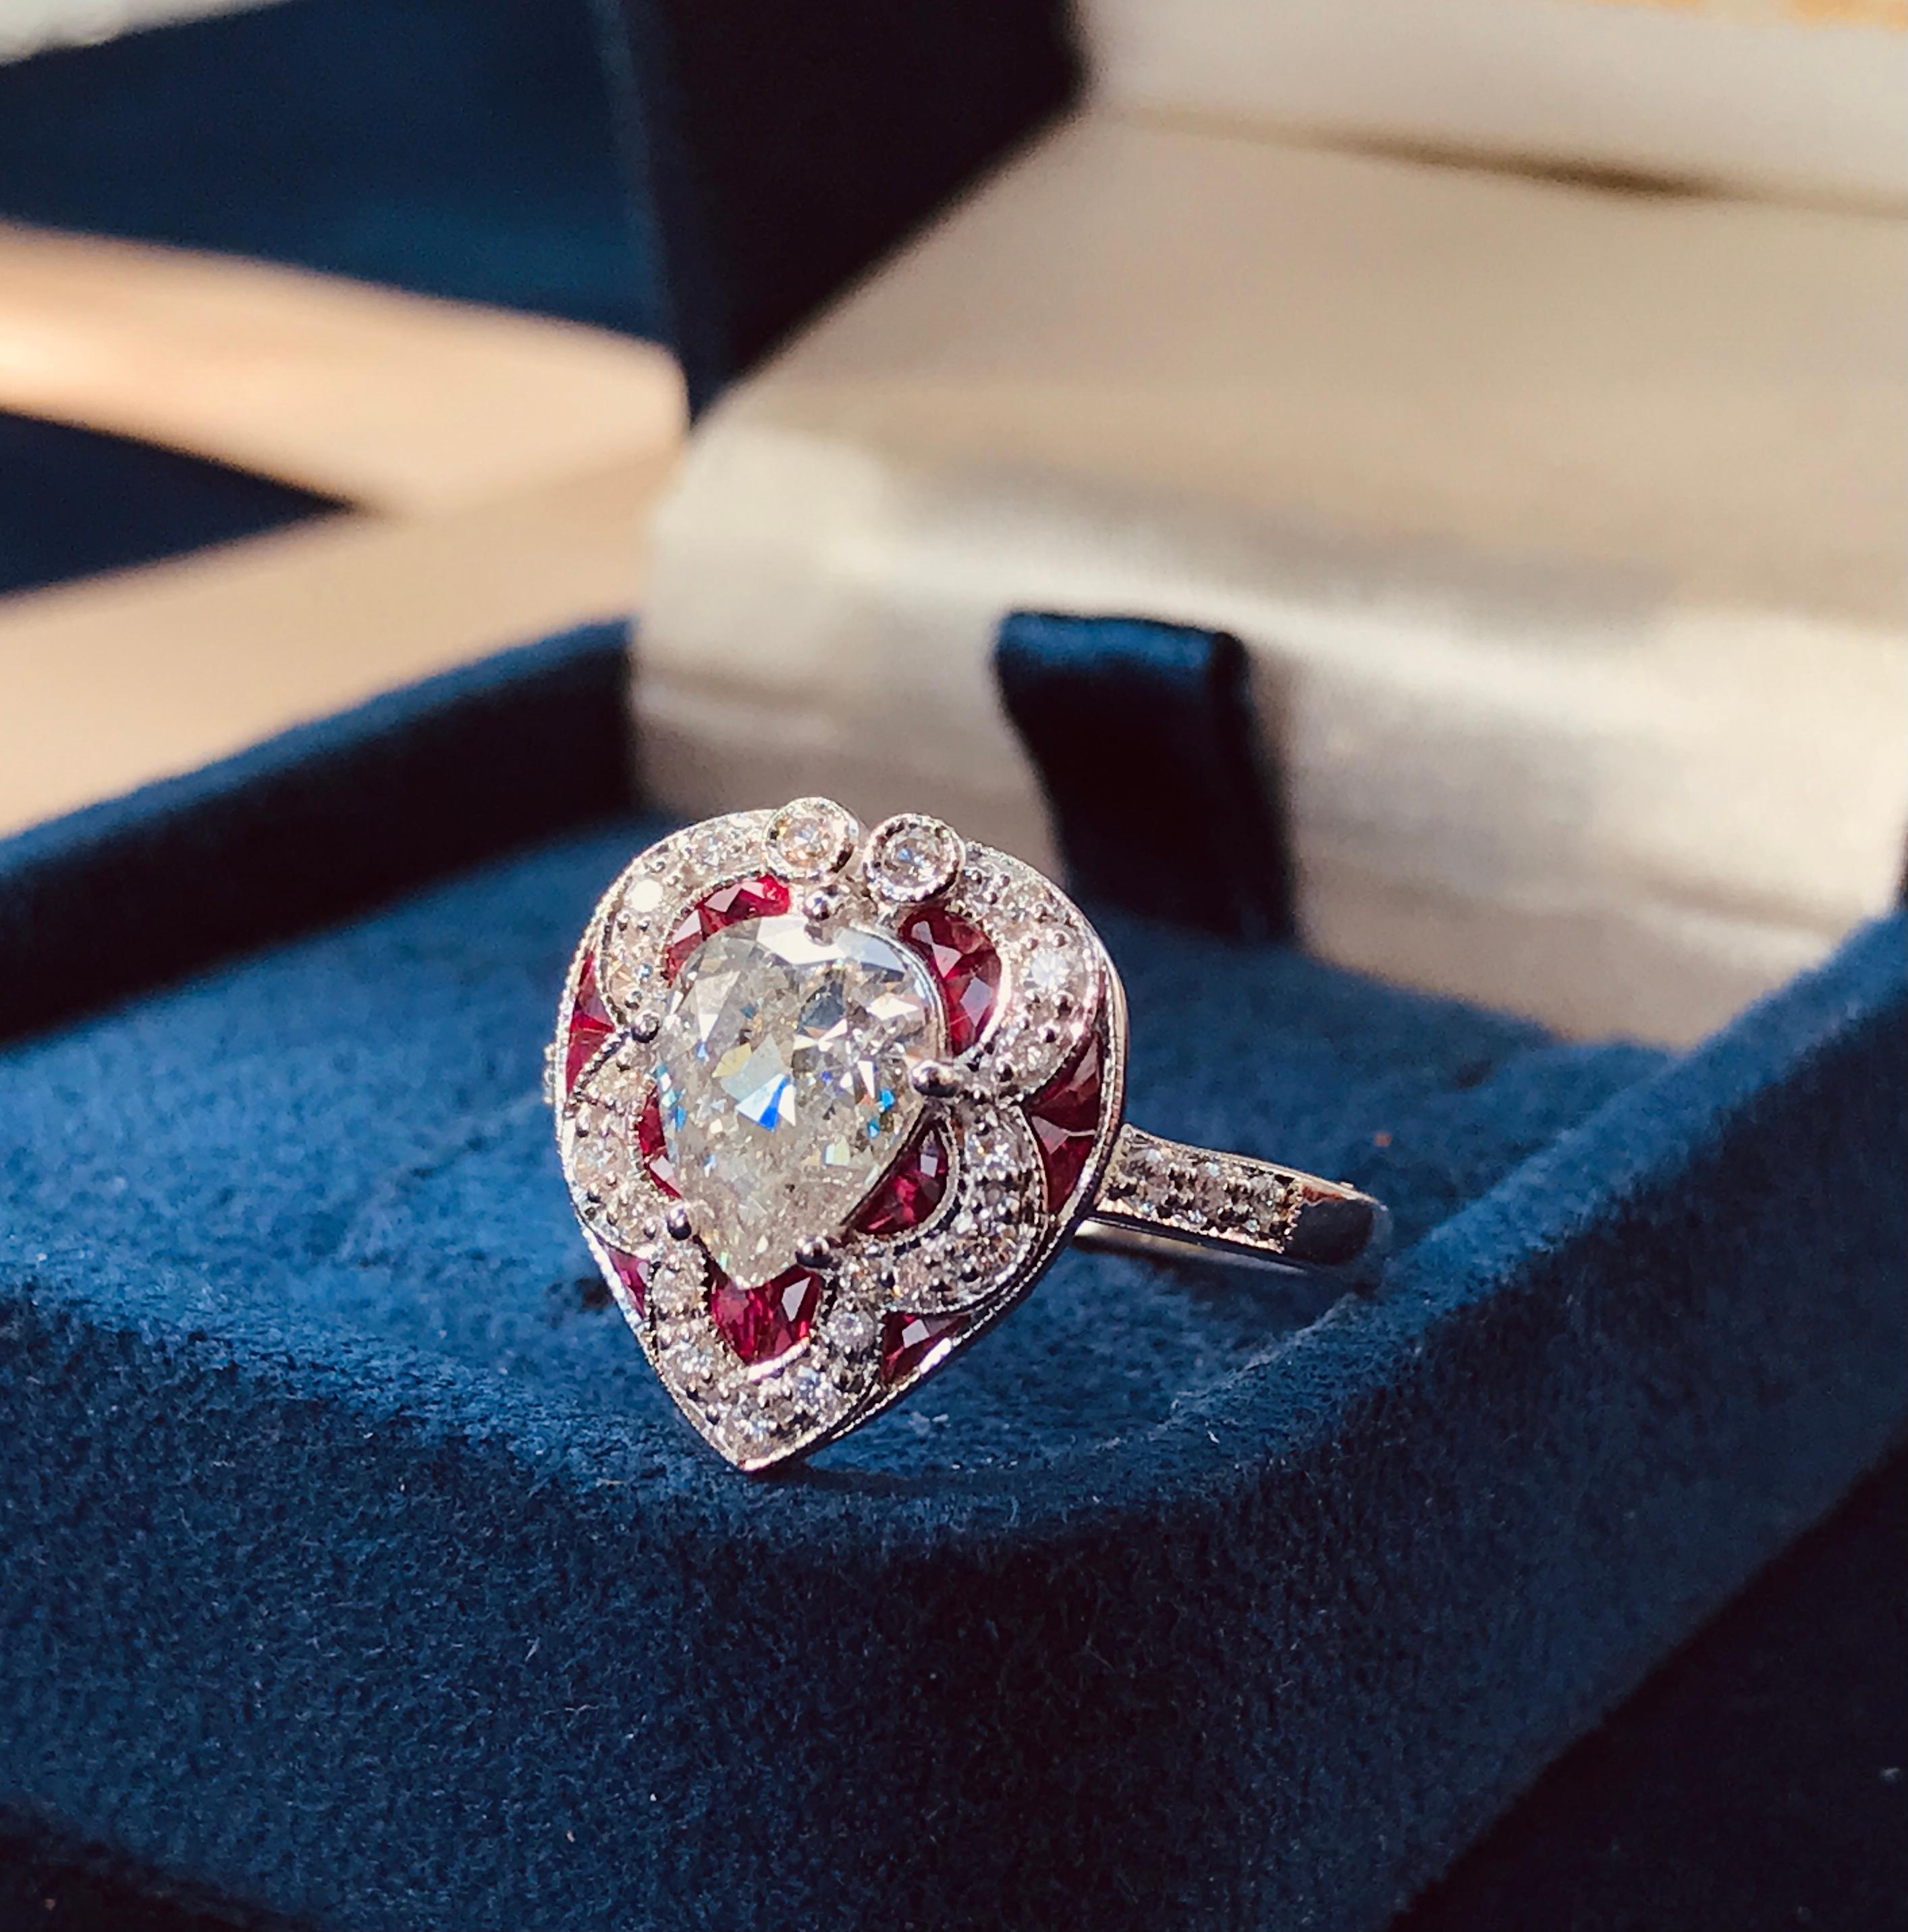 Im Mittelpunkt steht ein funkelnder birnenförmiger Diamant von 1,05 ct. (Farbe I, Reinheit I1), umrahmt von Rubinen im französischen Schliff und zusätzlich besetzt mit siebenundzwanzig runden Diamanten von ca. 0,23 Karat Gewicht, gefertigt in 18